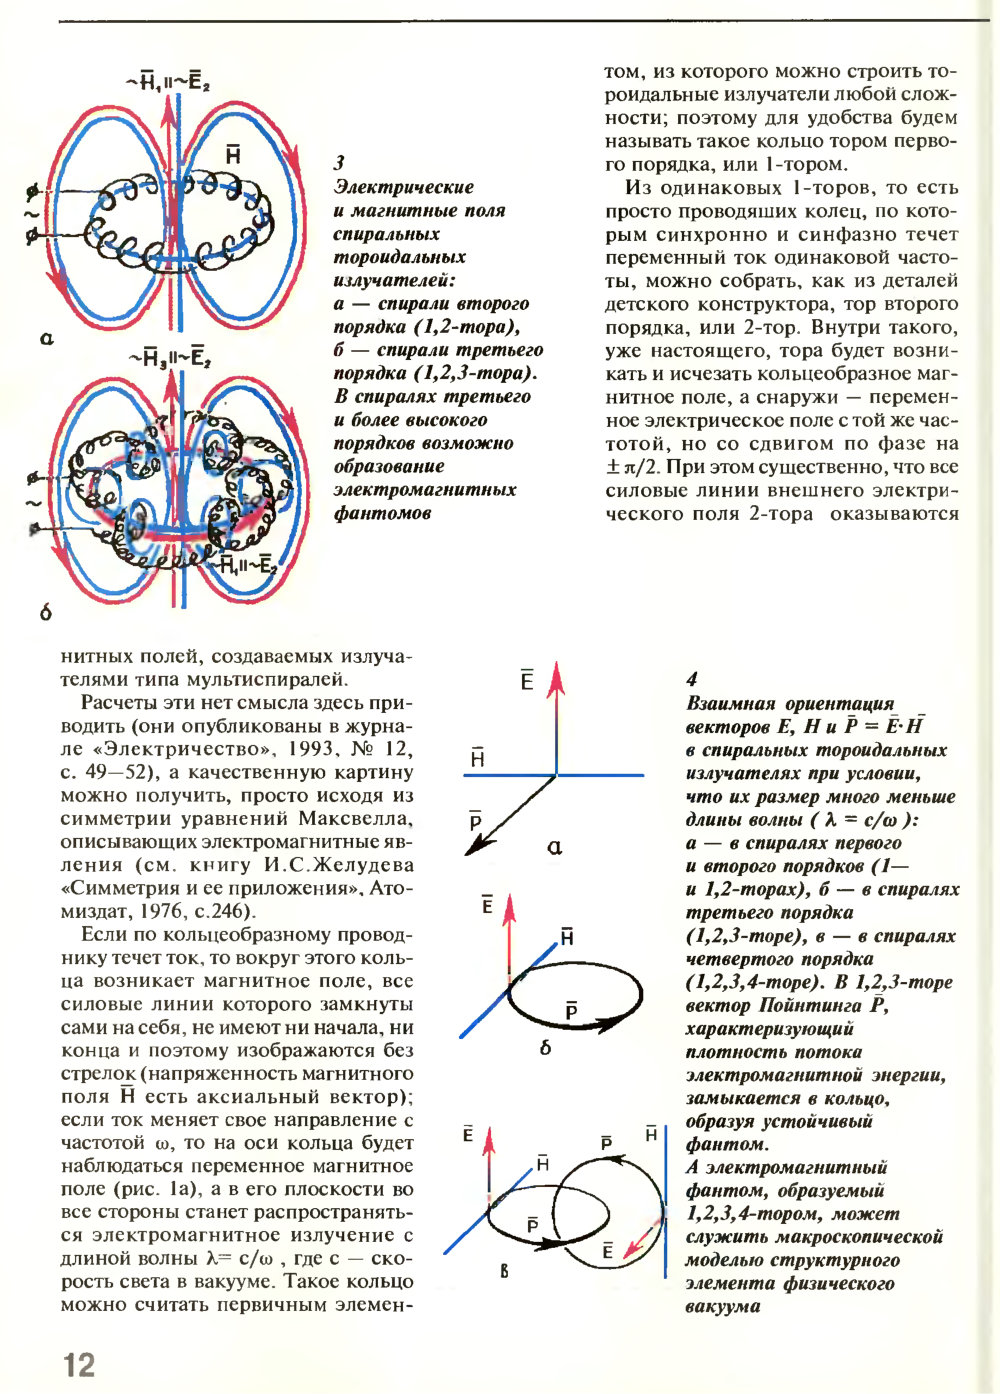 Игра в бублики. В.Е. Жвирблис. Химия и жизнь, 1995, №5, с.10-15. Фотокопия №3